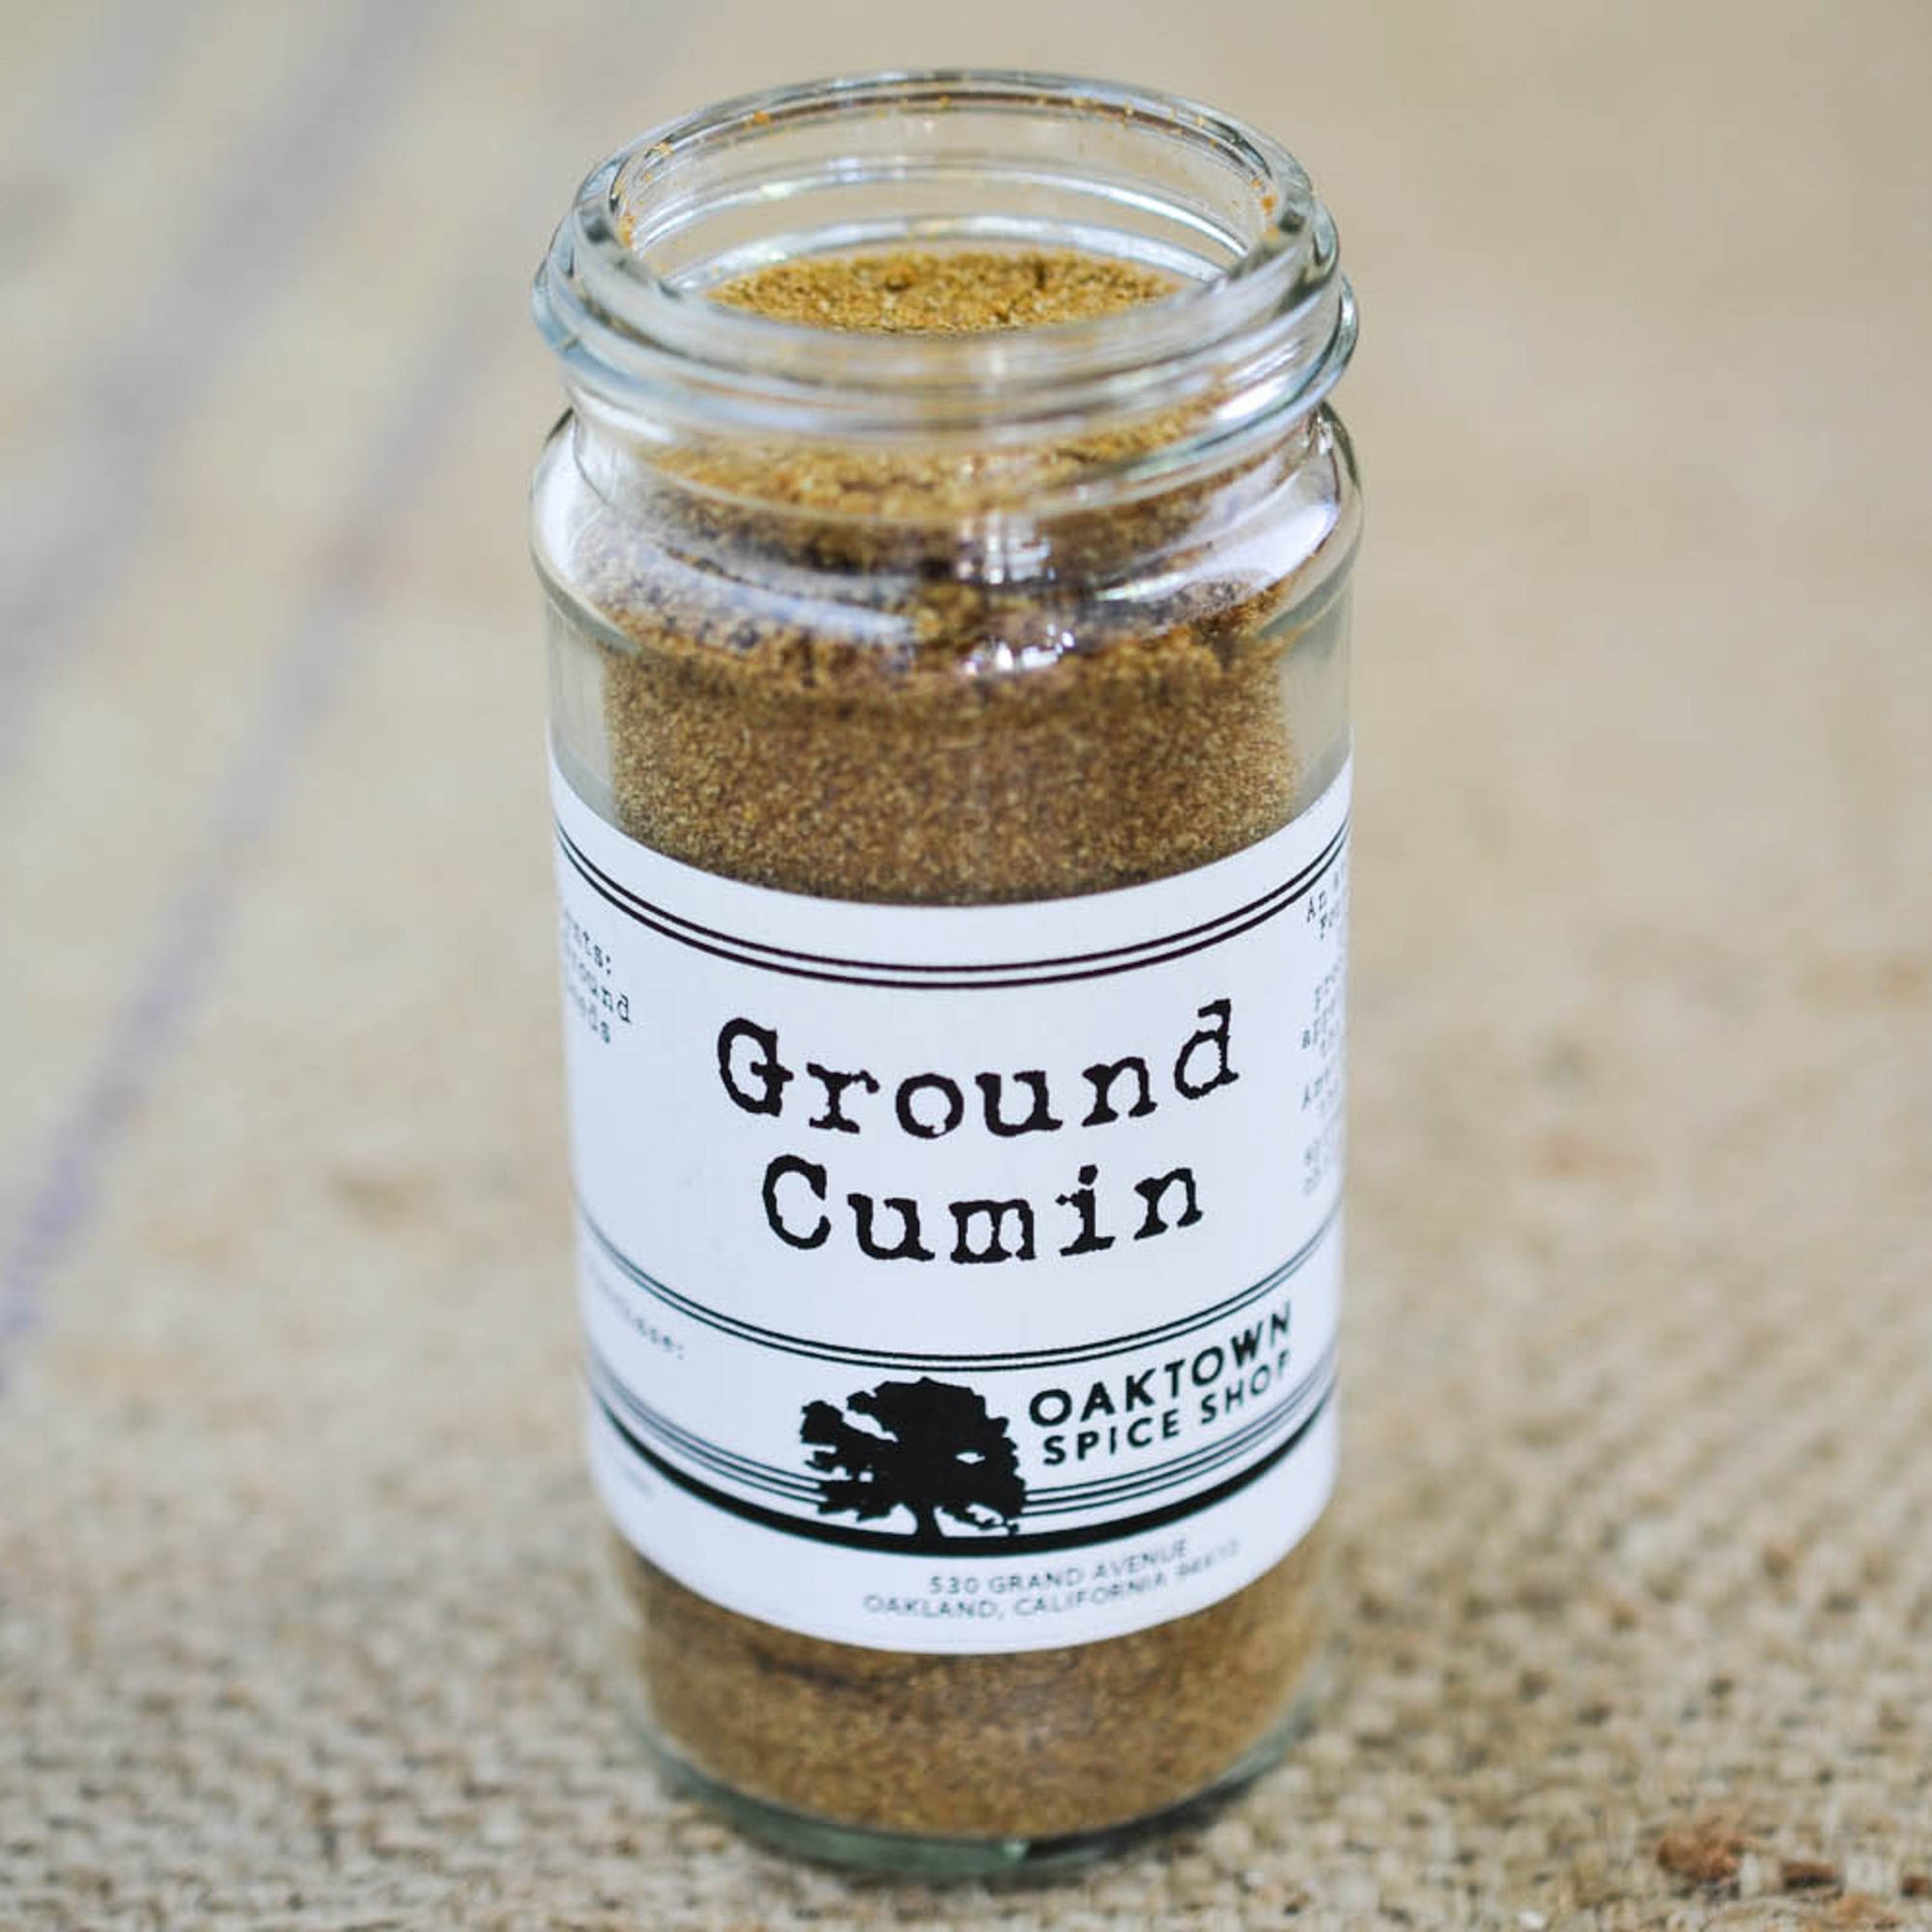 Ground Cumin Fresh Ground by Oaktown Spice Shop